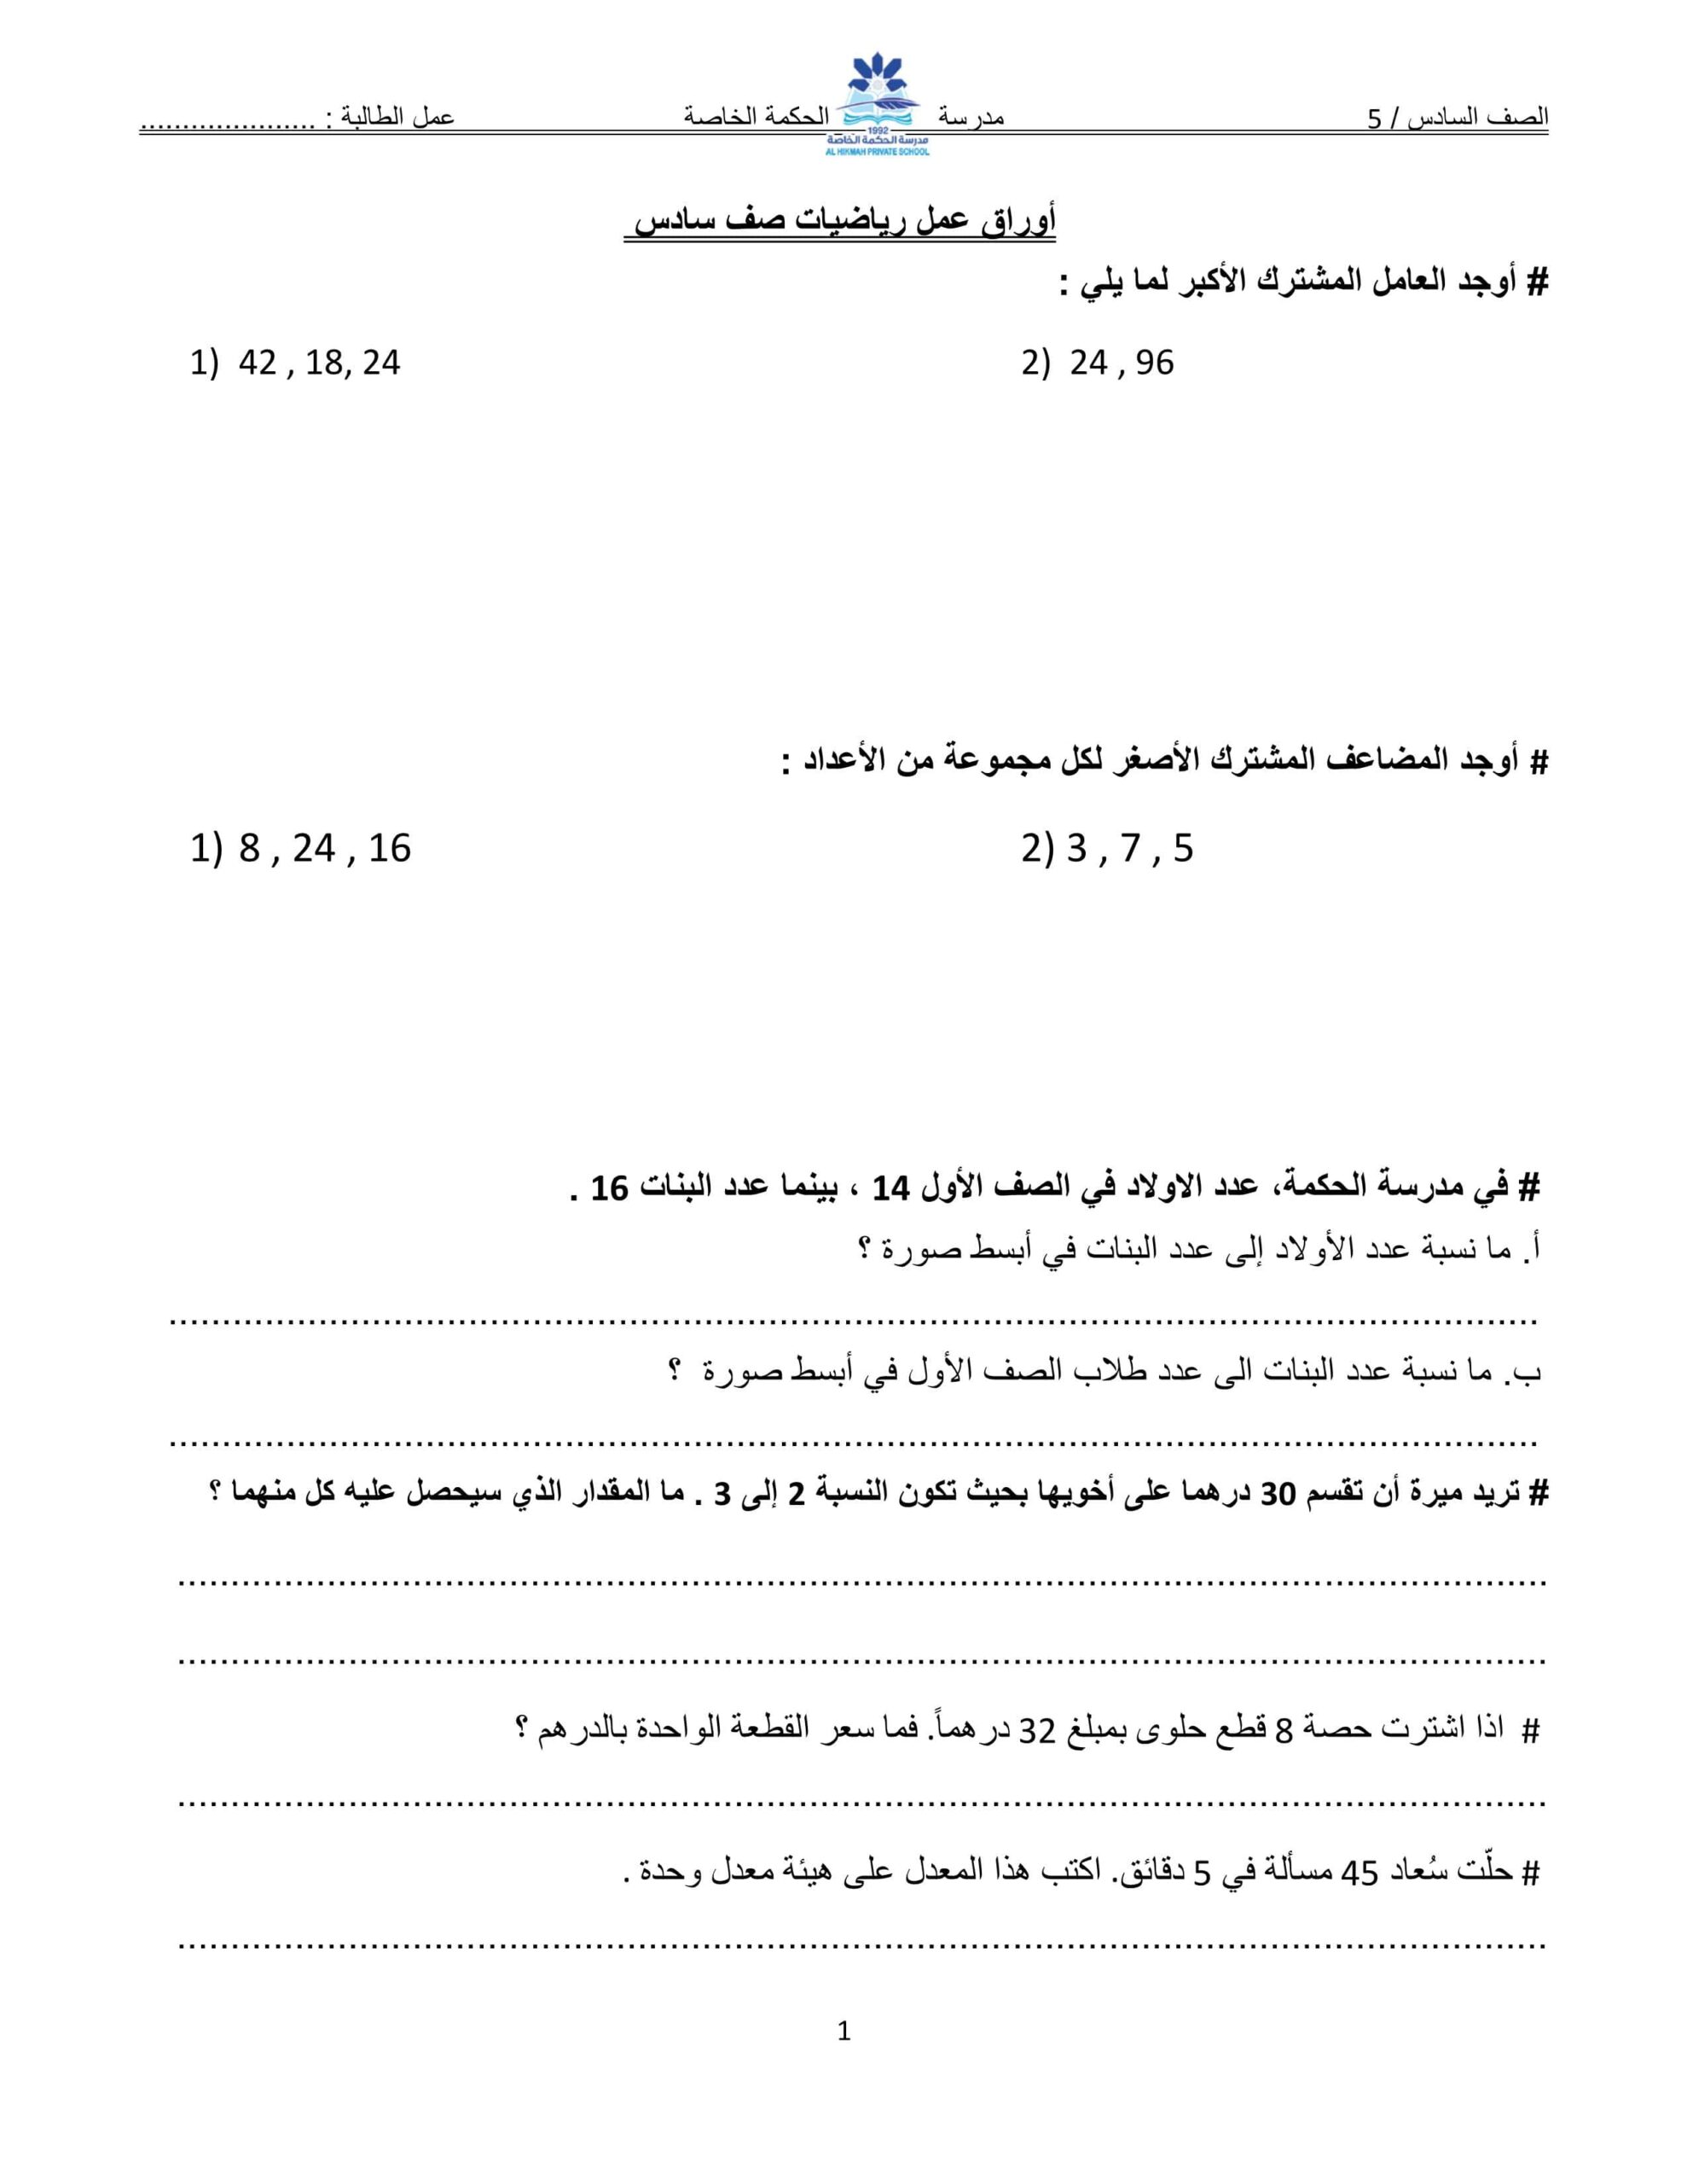 أوراق عمل مراجعة متنوعة الرياضيات المتكاملة الصف السادس